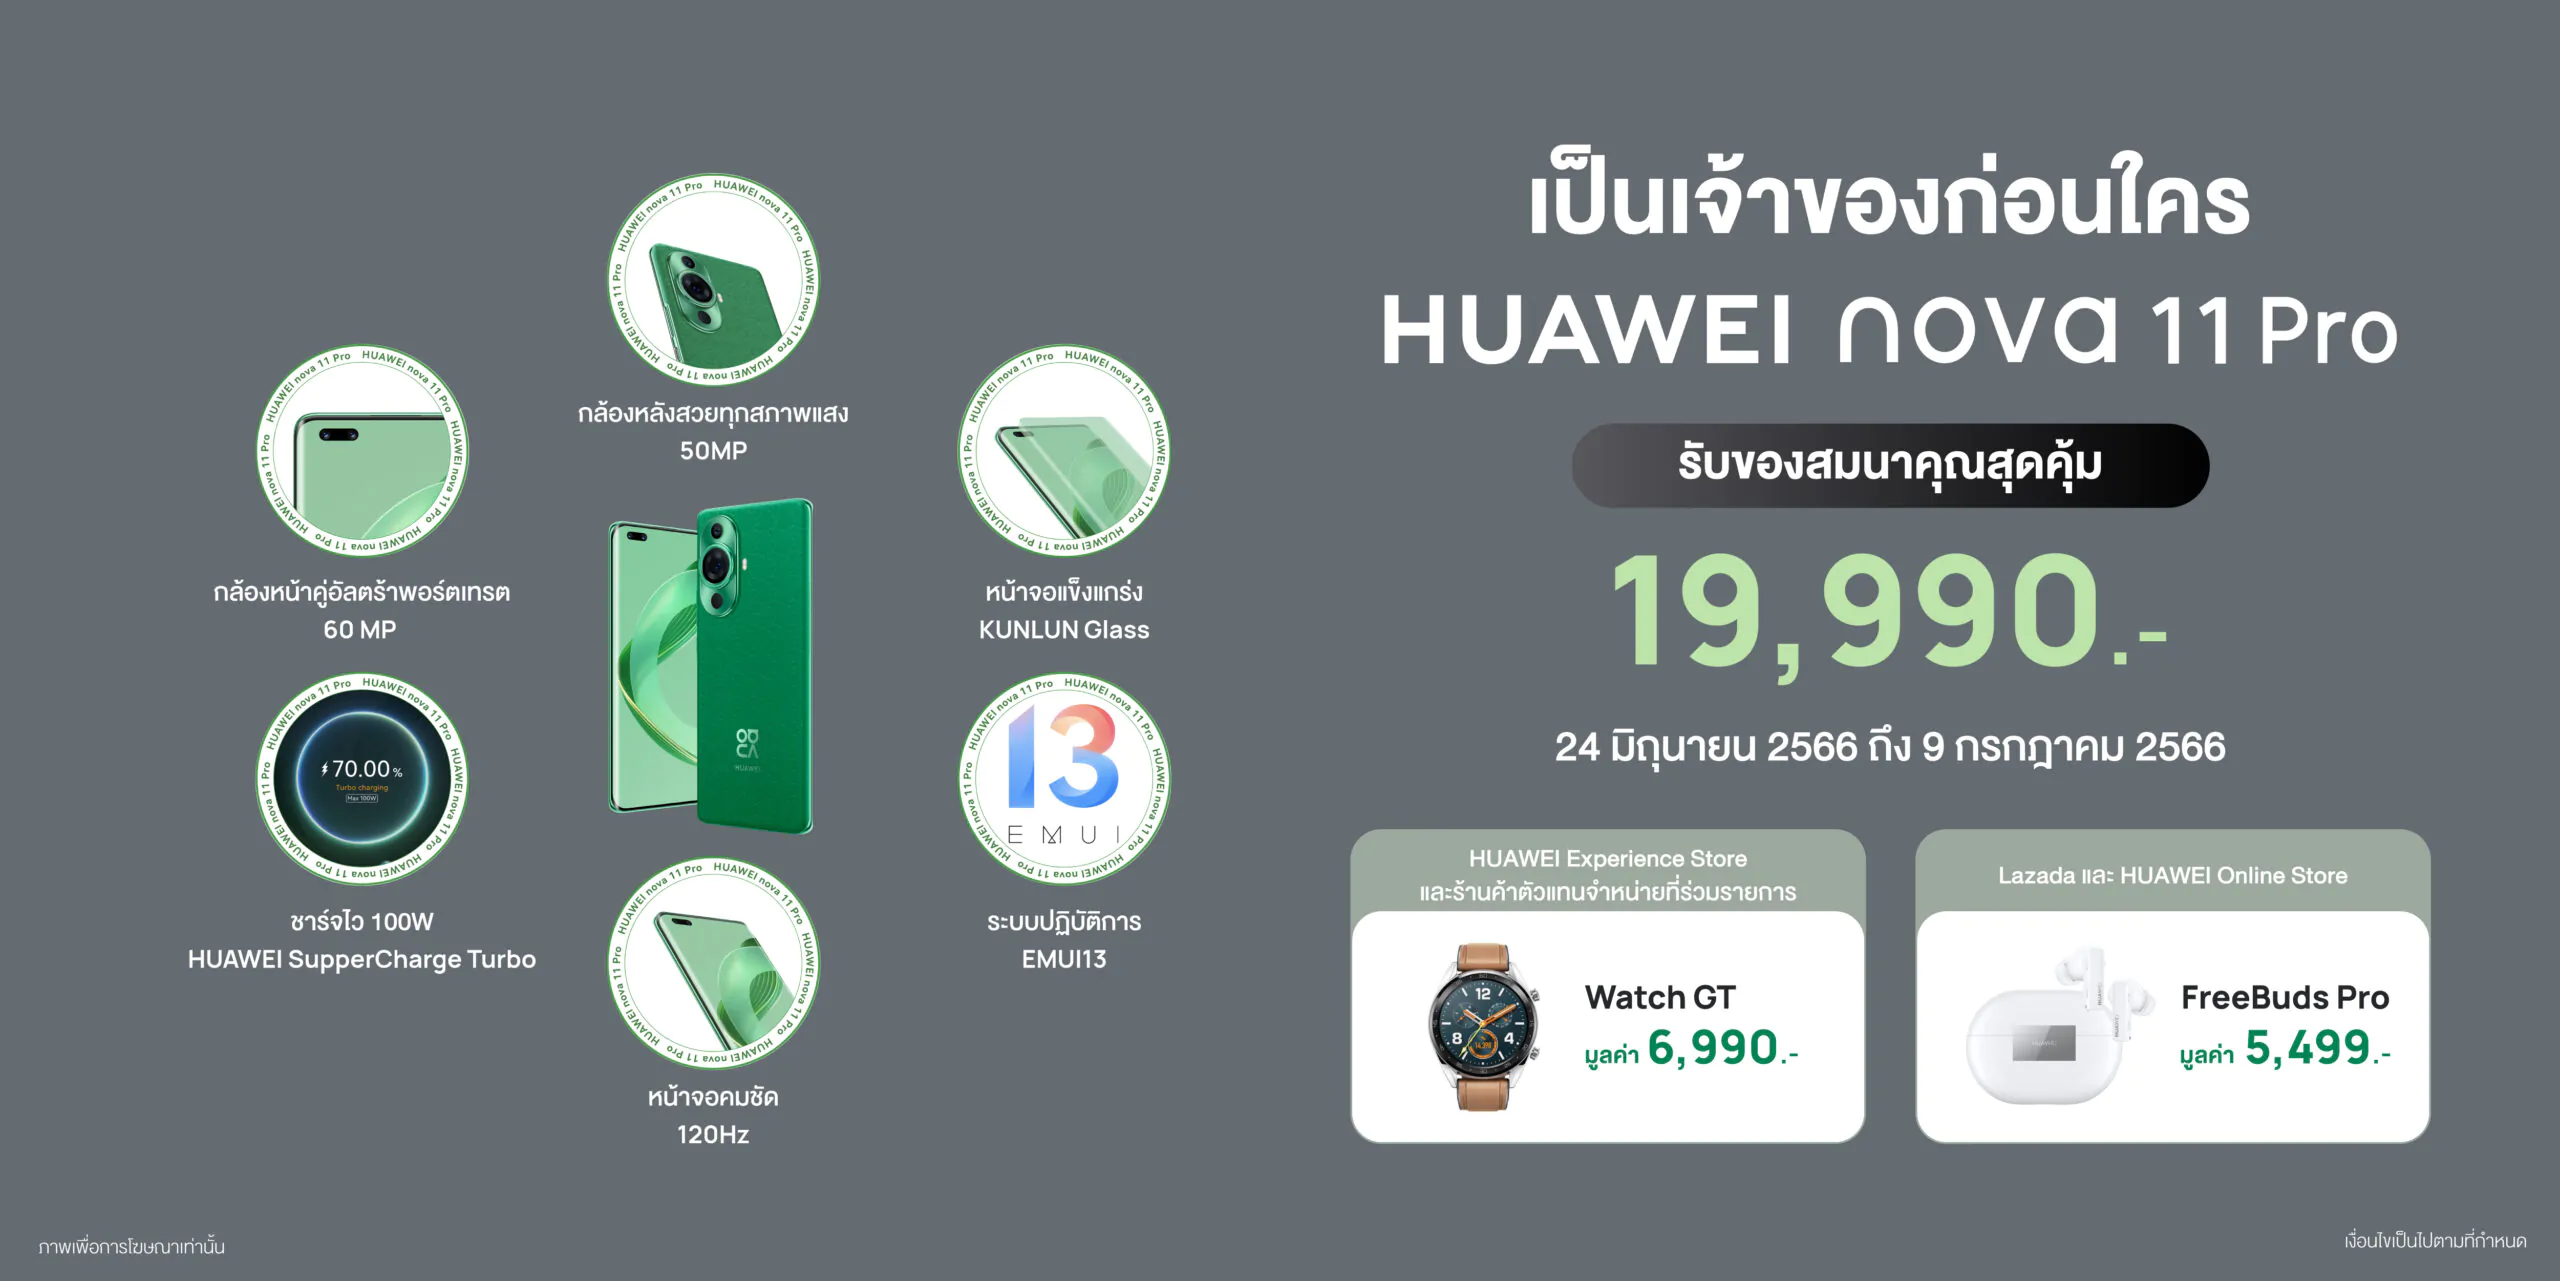 PR KSP nova11Pro 01 scaled | Huawei | ด่วน! เช็คโปร Early Bird เป็นเจ้าของ HUAWEI nova 11 Series ก่อนพร้อมของสมนาคุณ 6,990 บาท!